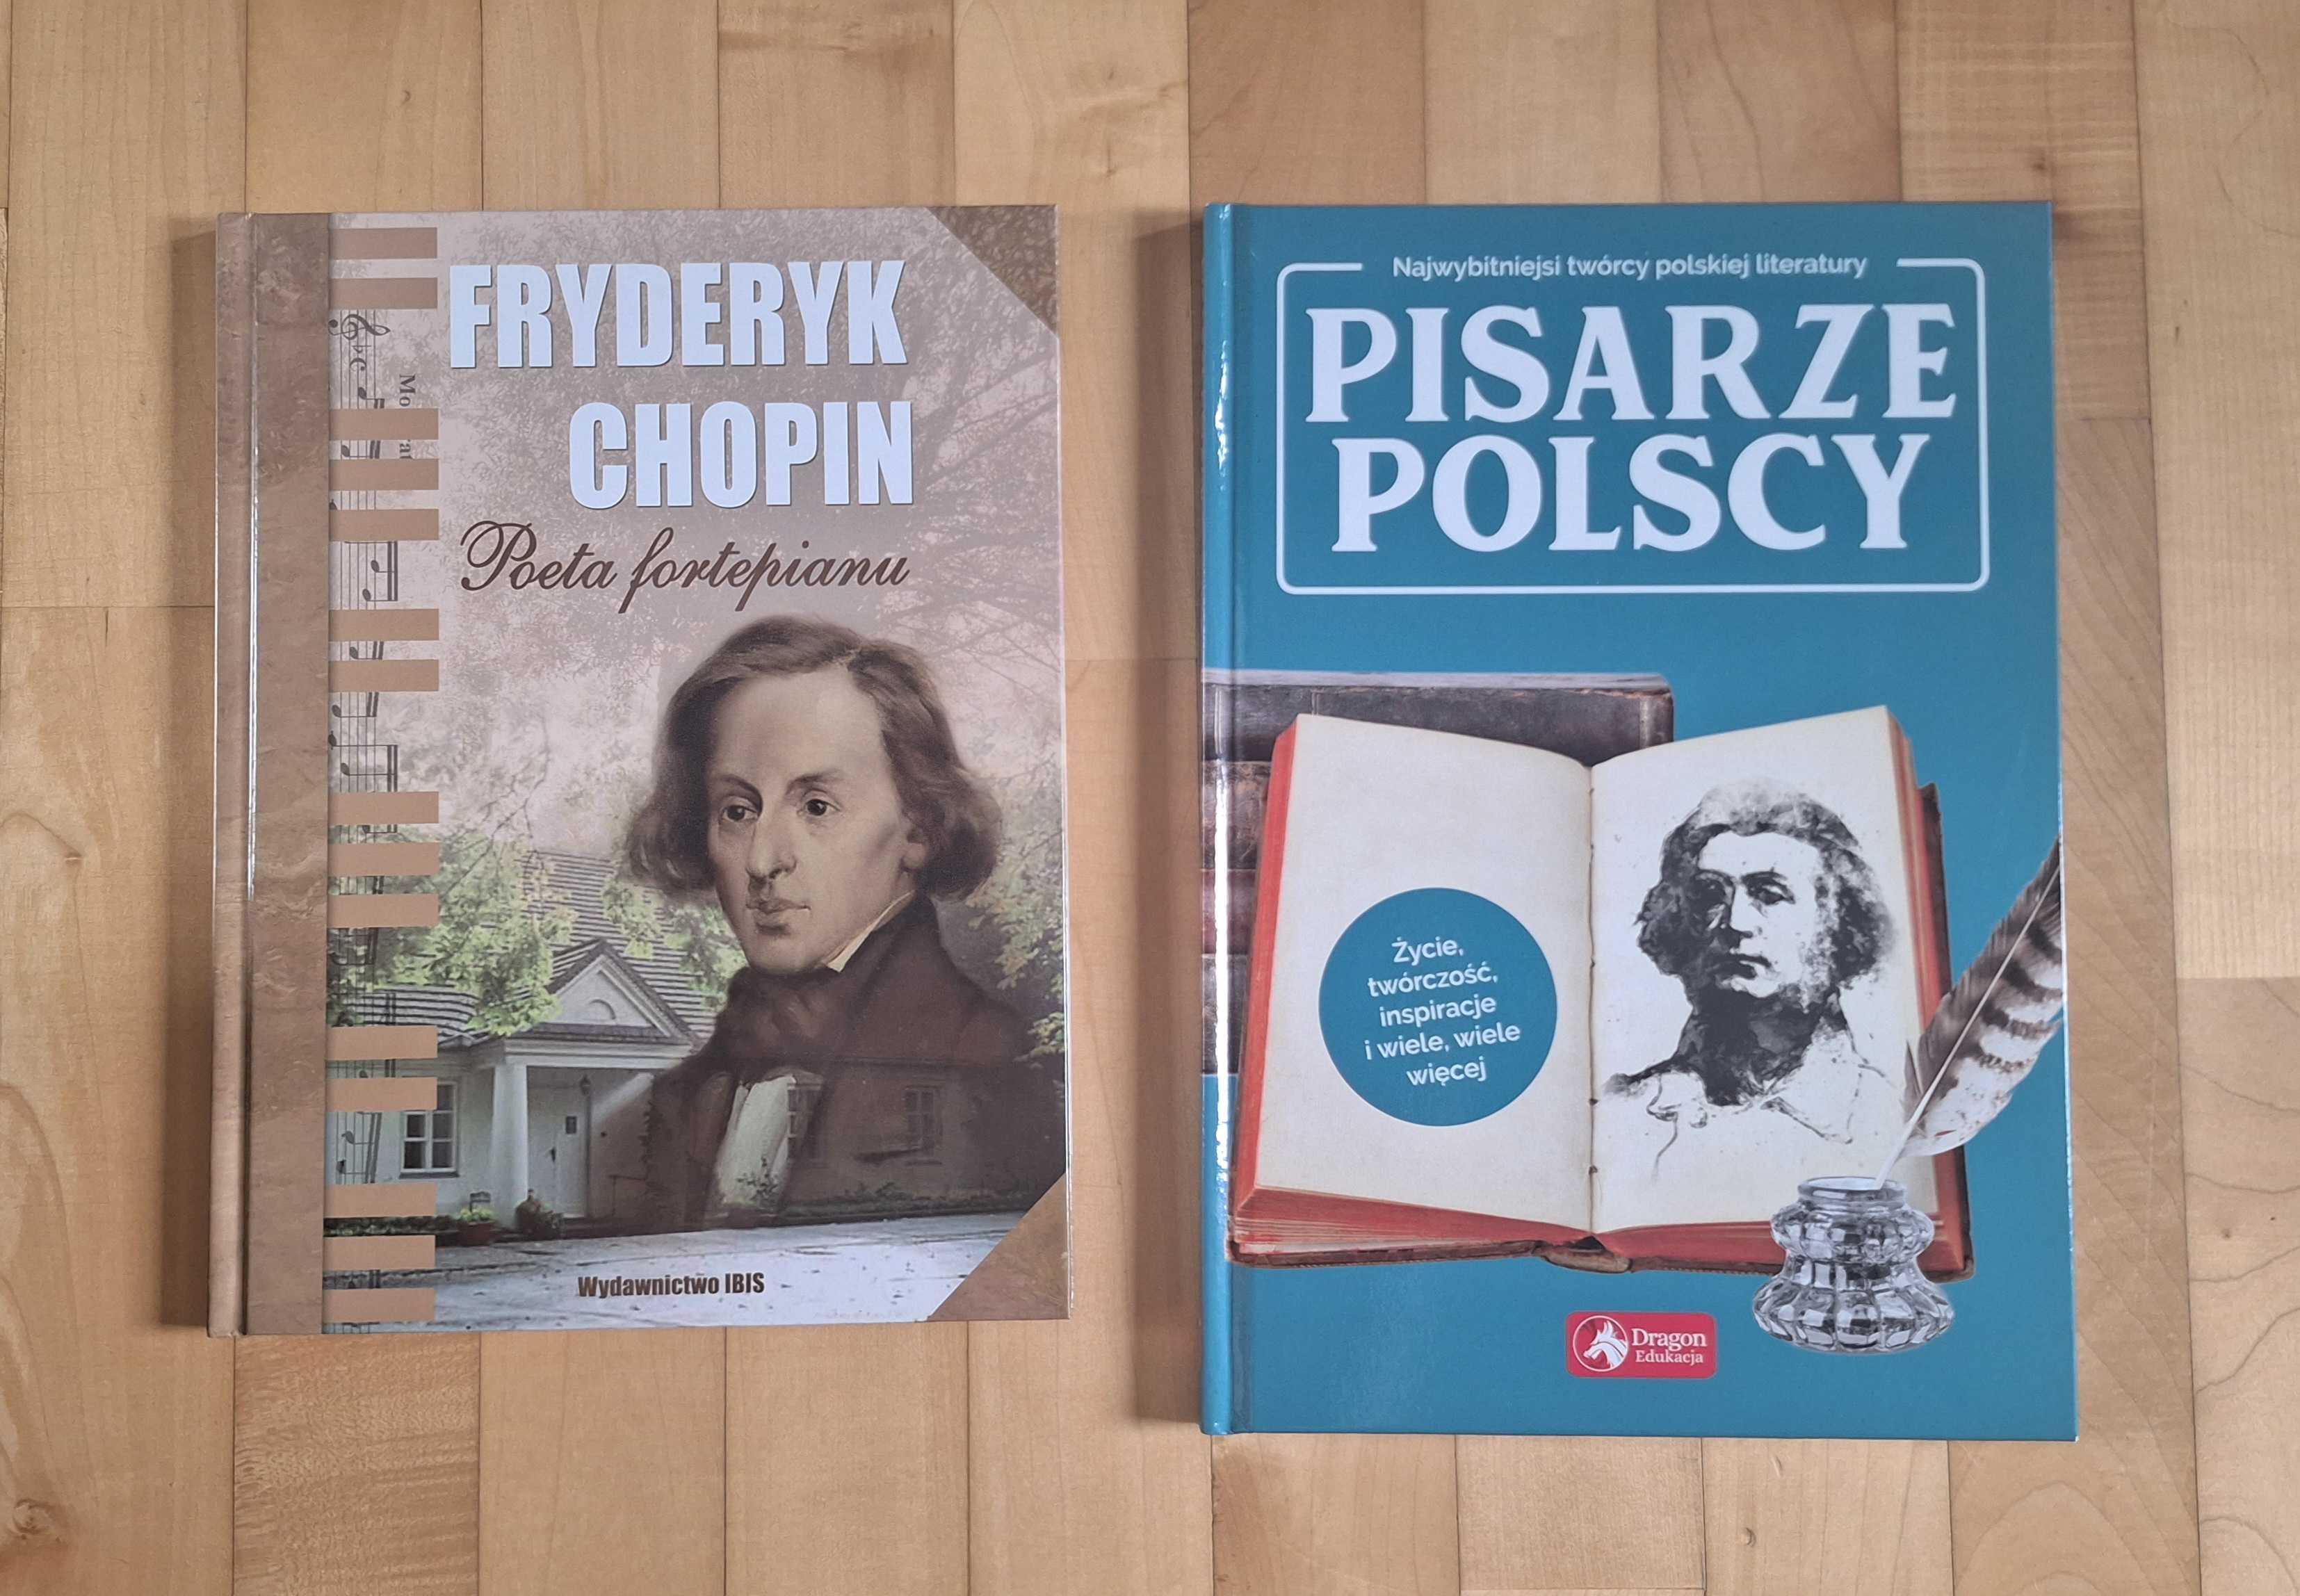 Książki Fryderyk Chopin poeta fortepianu oraz Pisarze Polscy